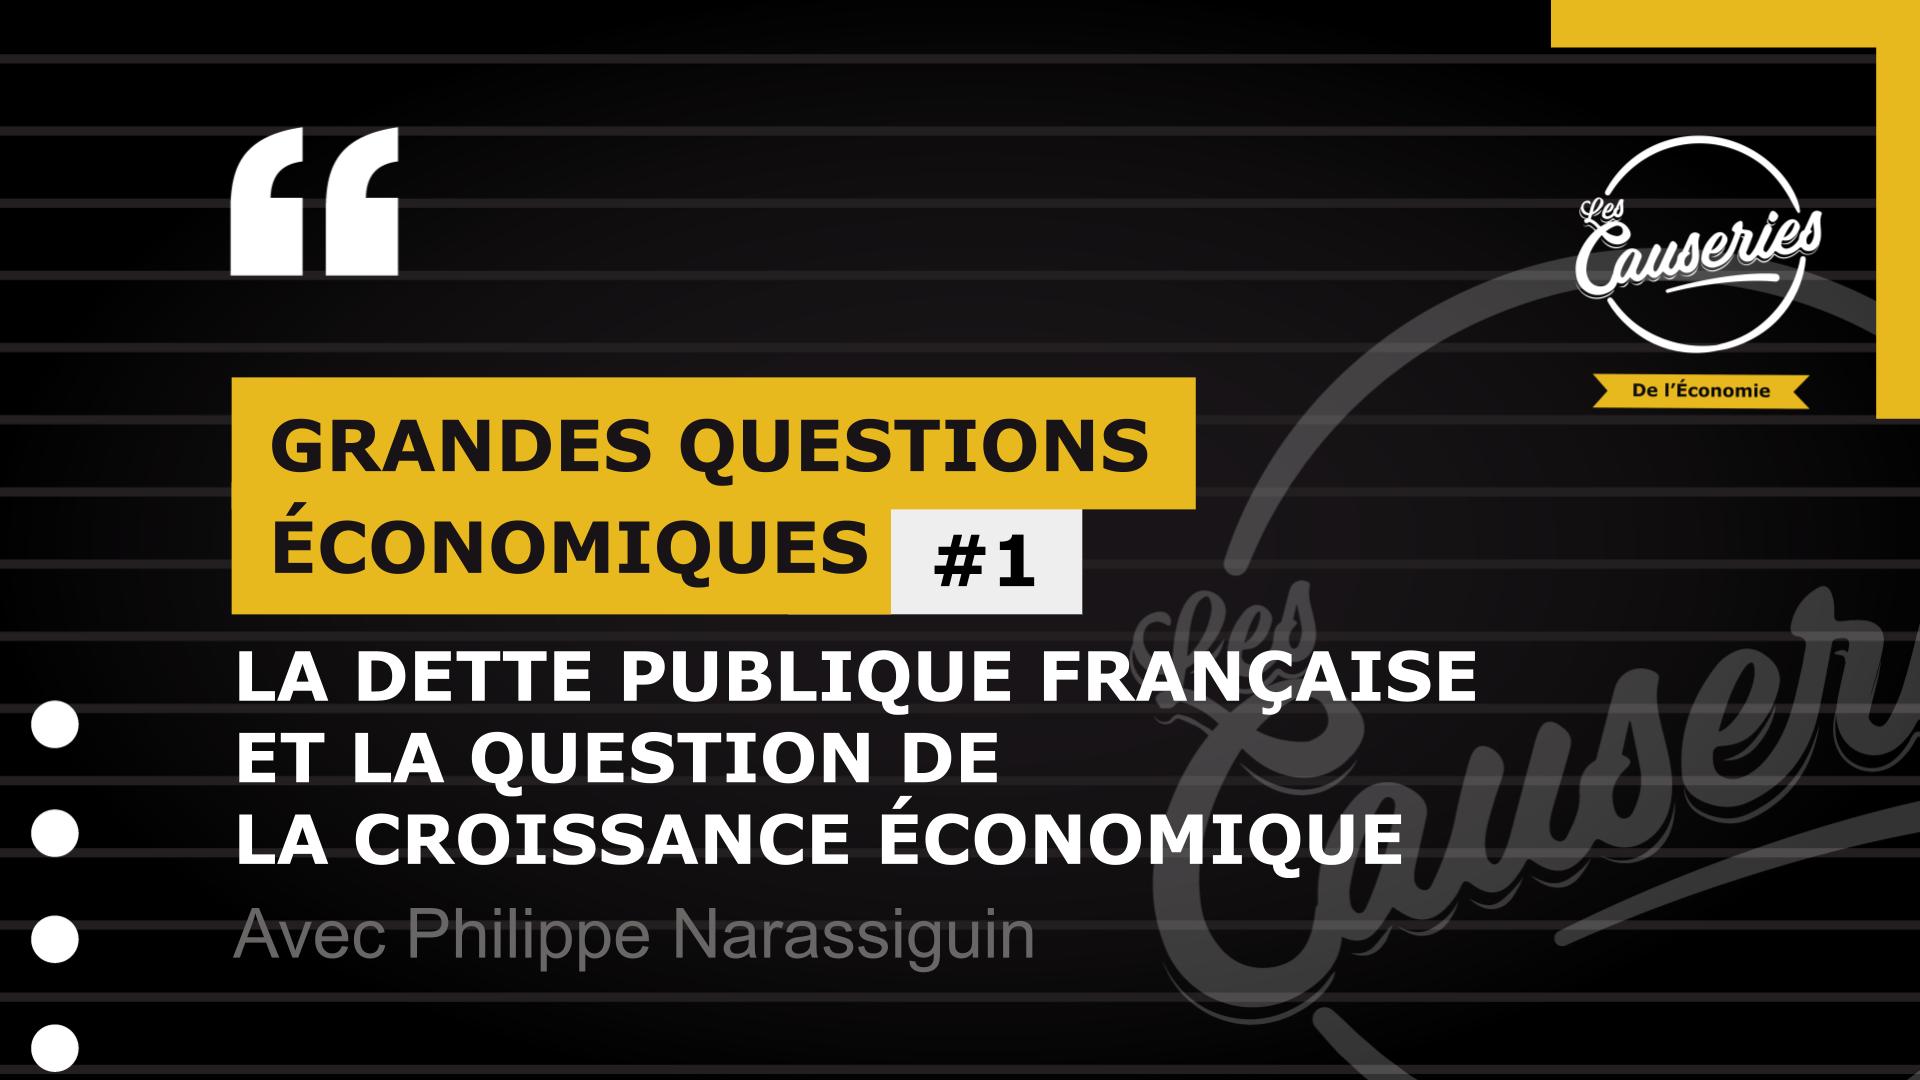 Les causeries de l'économie : Grandes questions économiques #1 - La dette publique française